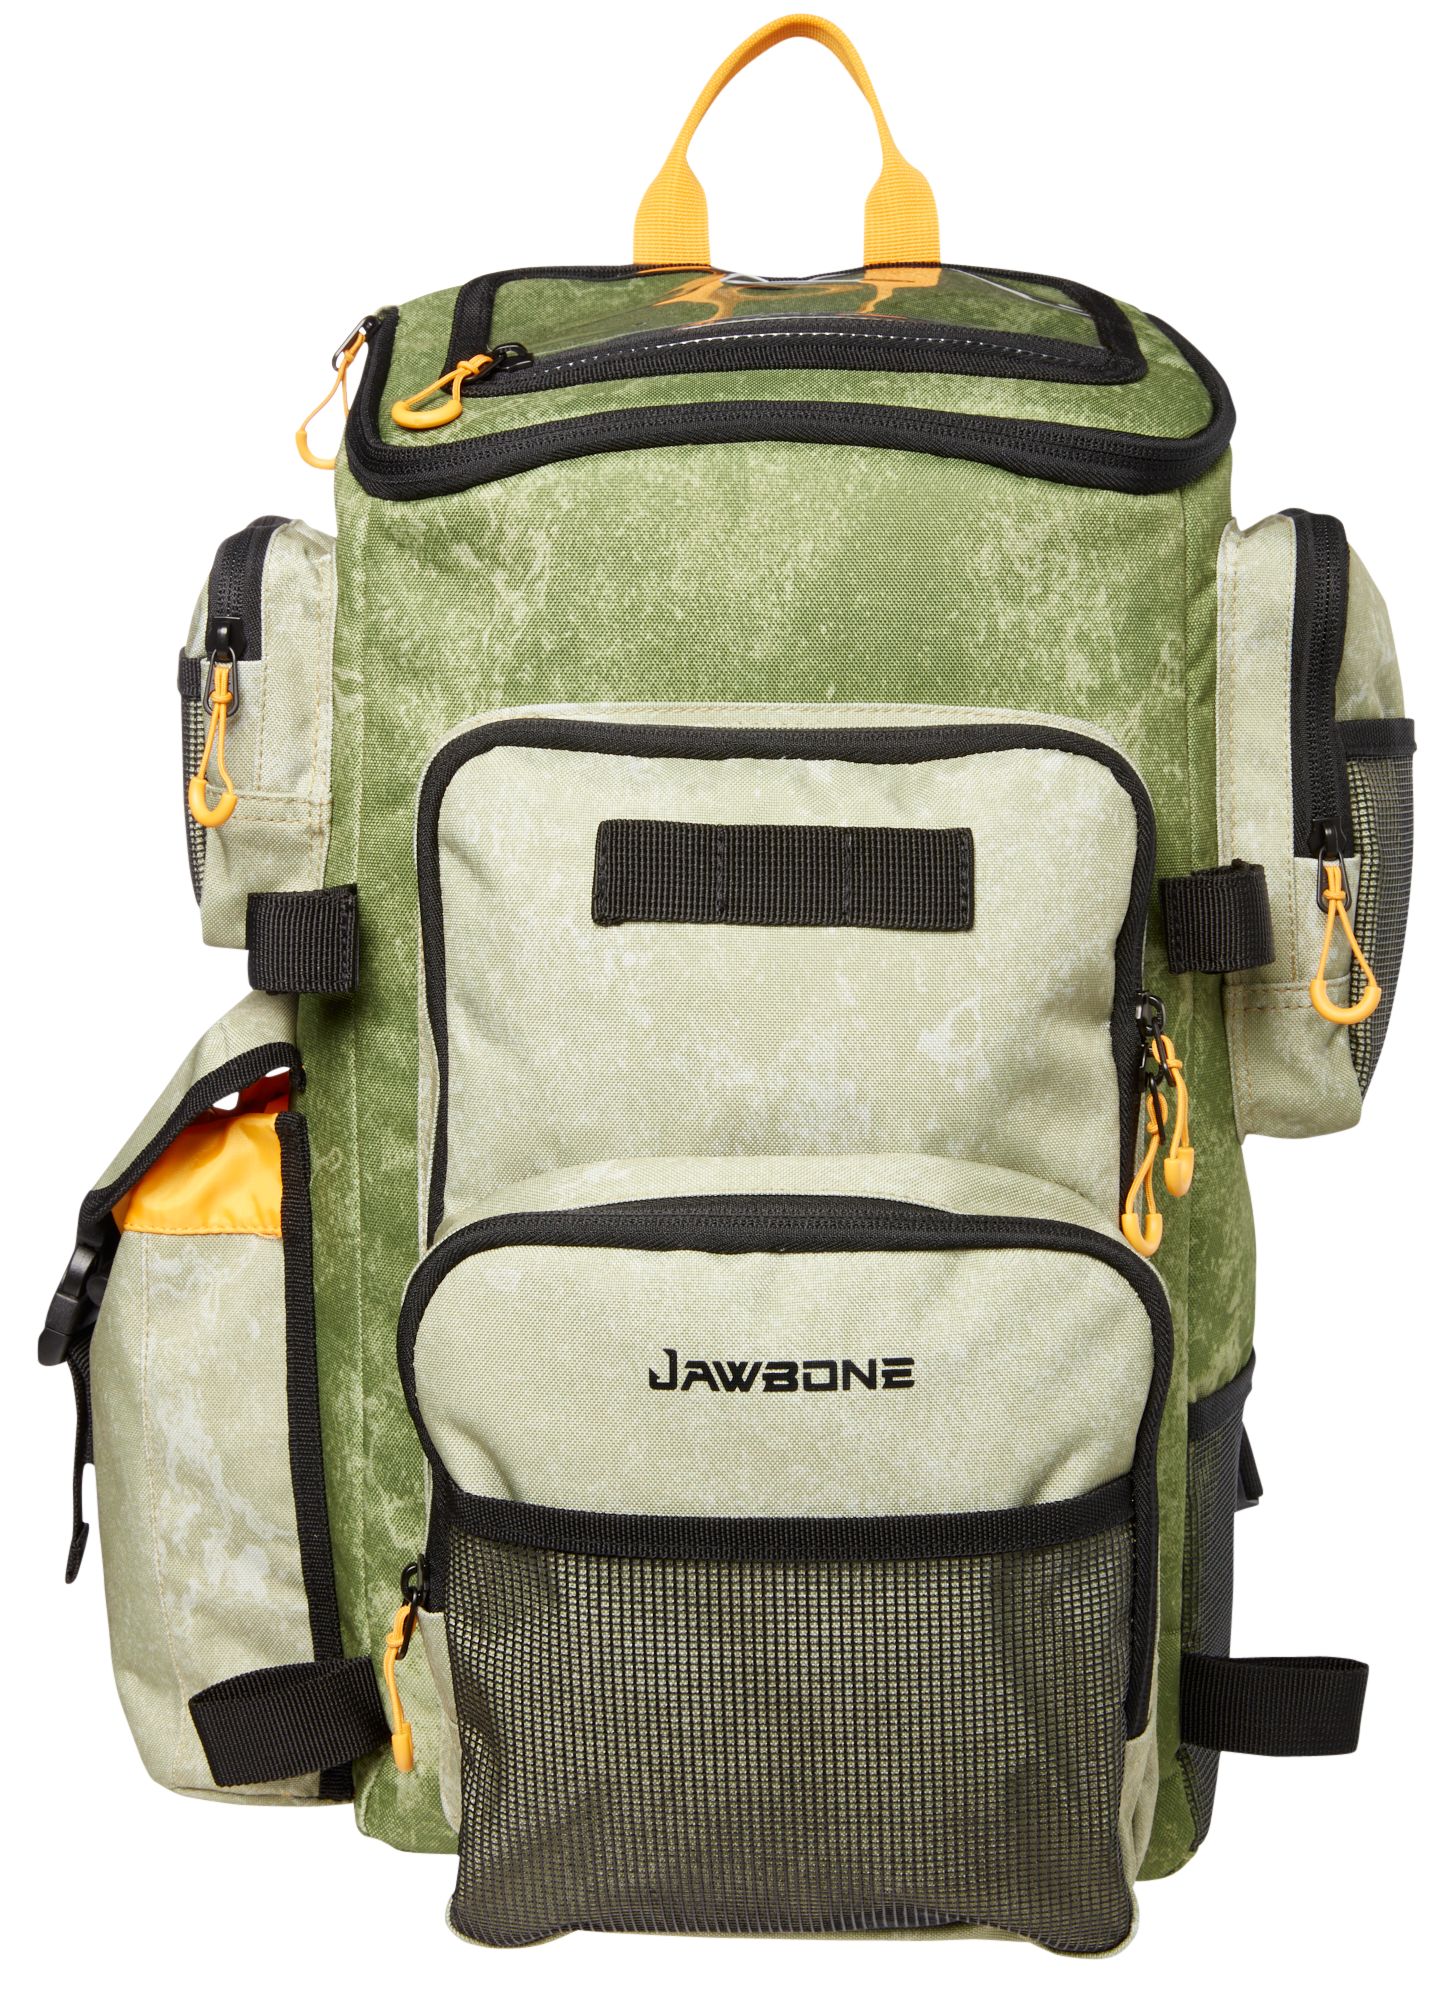 Jawbone Slim Tackle Backpack